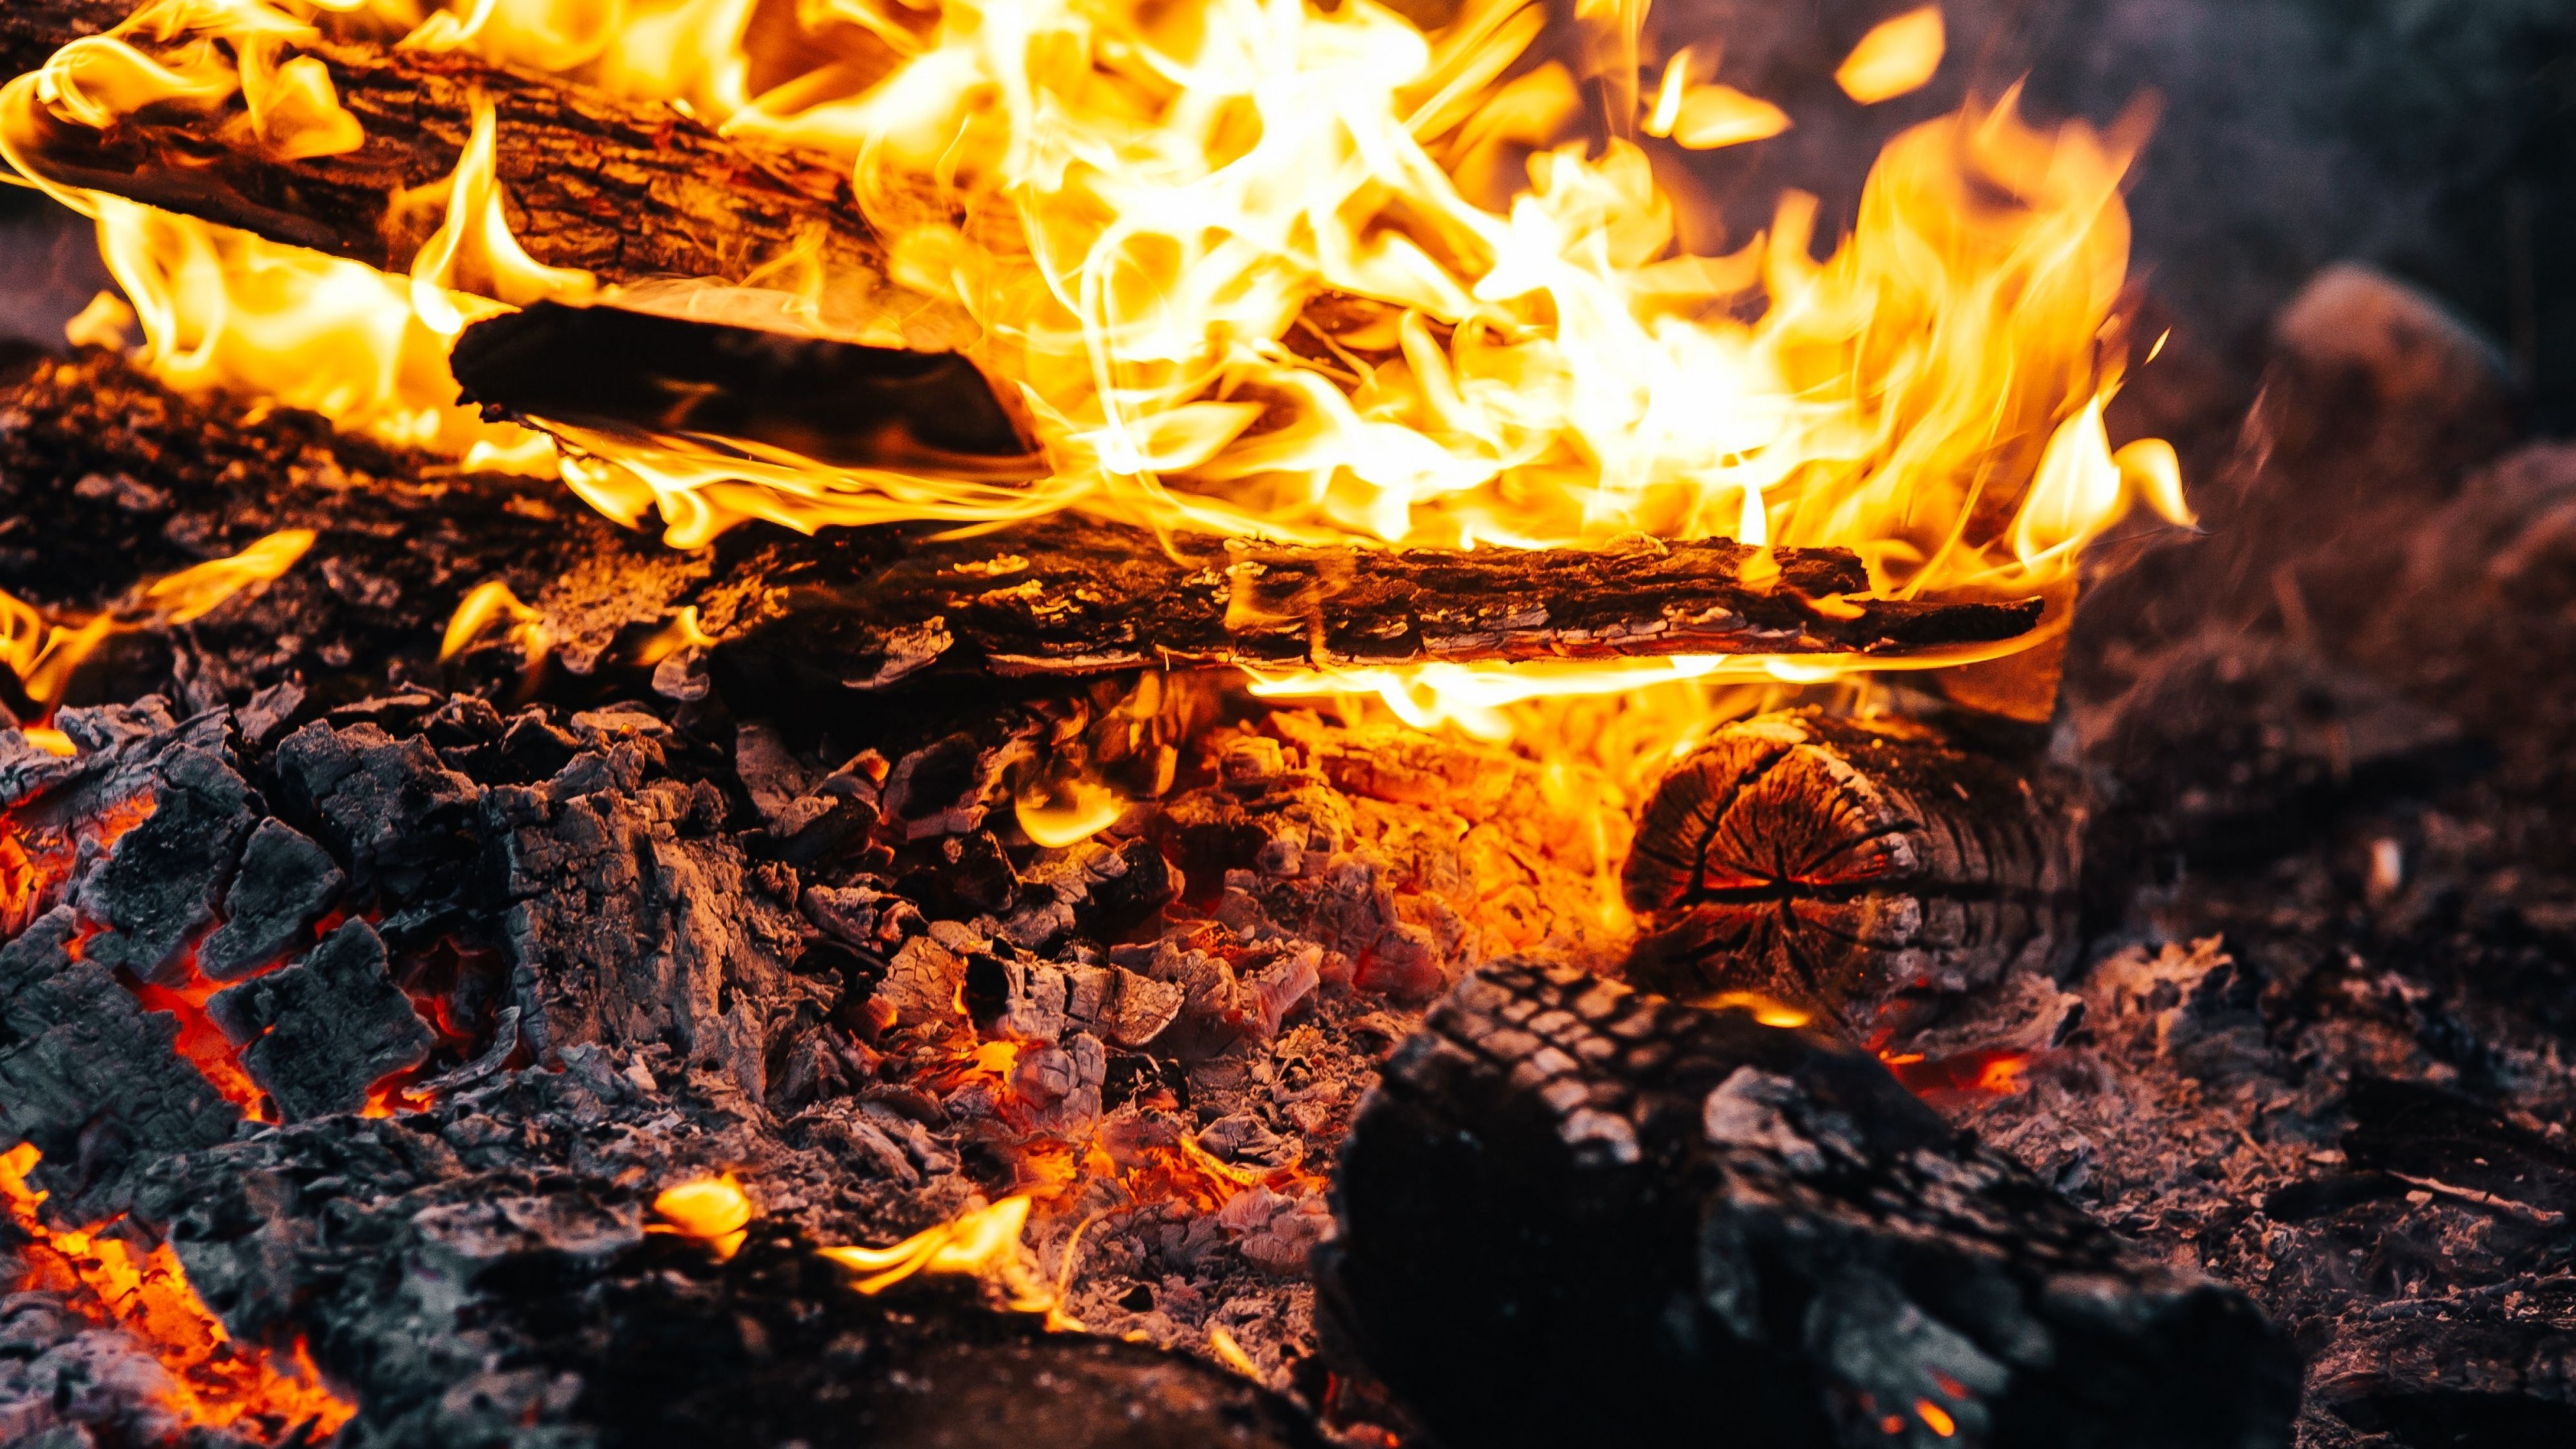 Download 3200x1800 Flames, Bonfire, Firewood Wallpaper